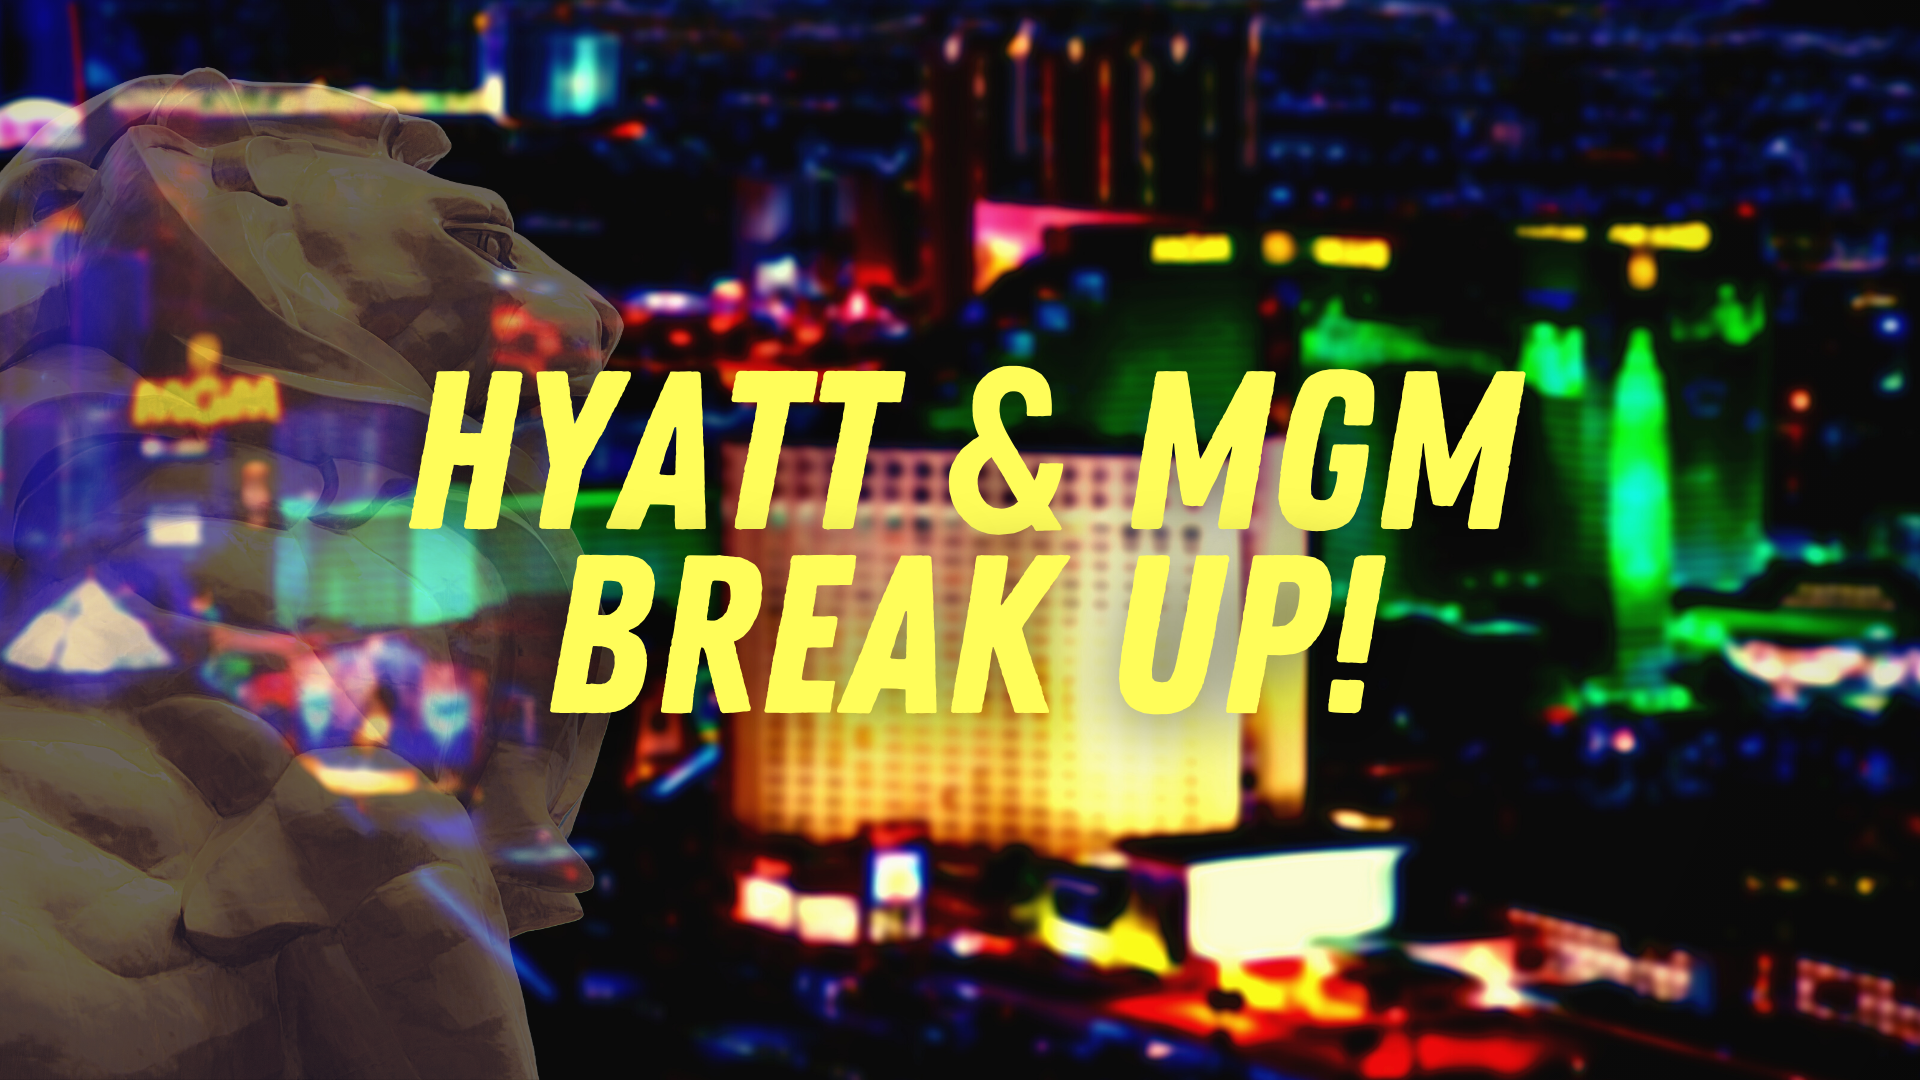 Hyatt MGM Partnership Ending